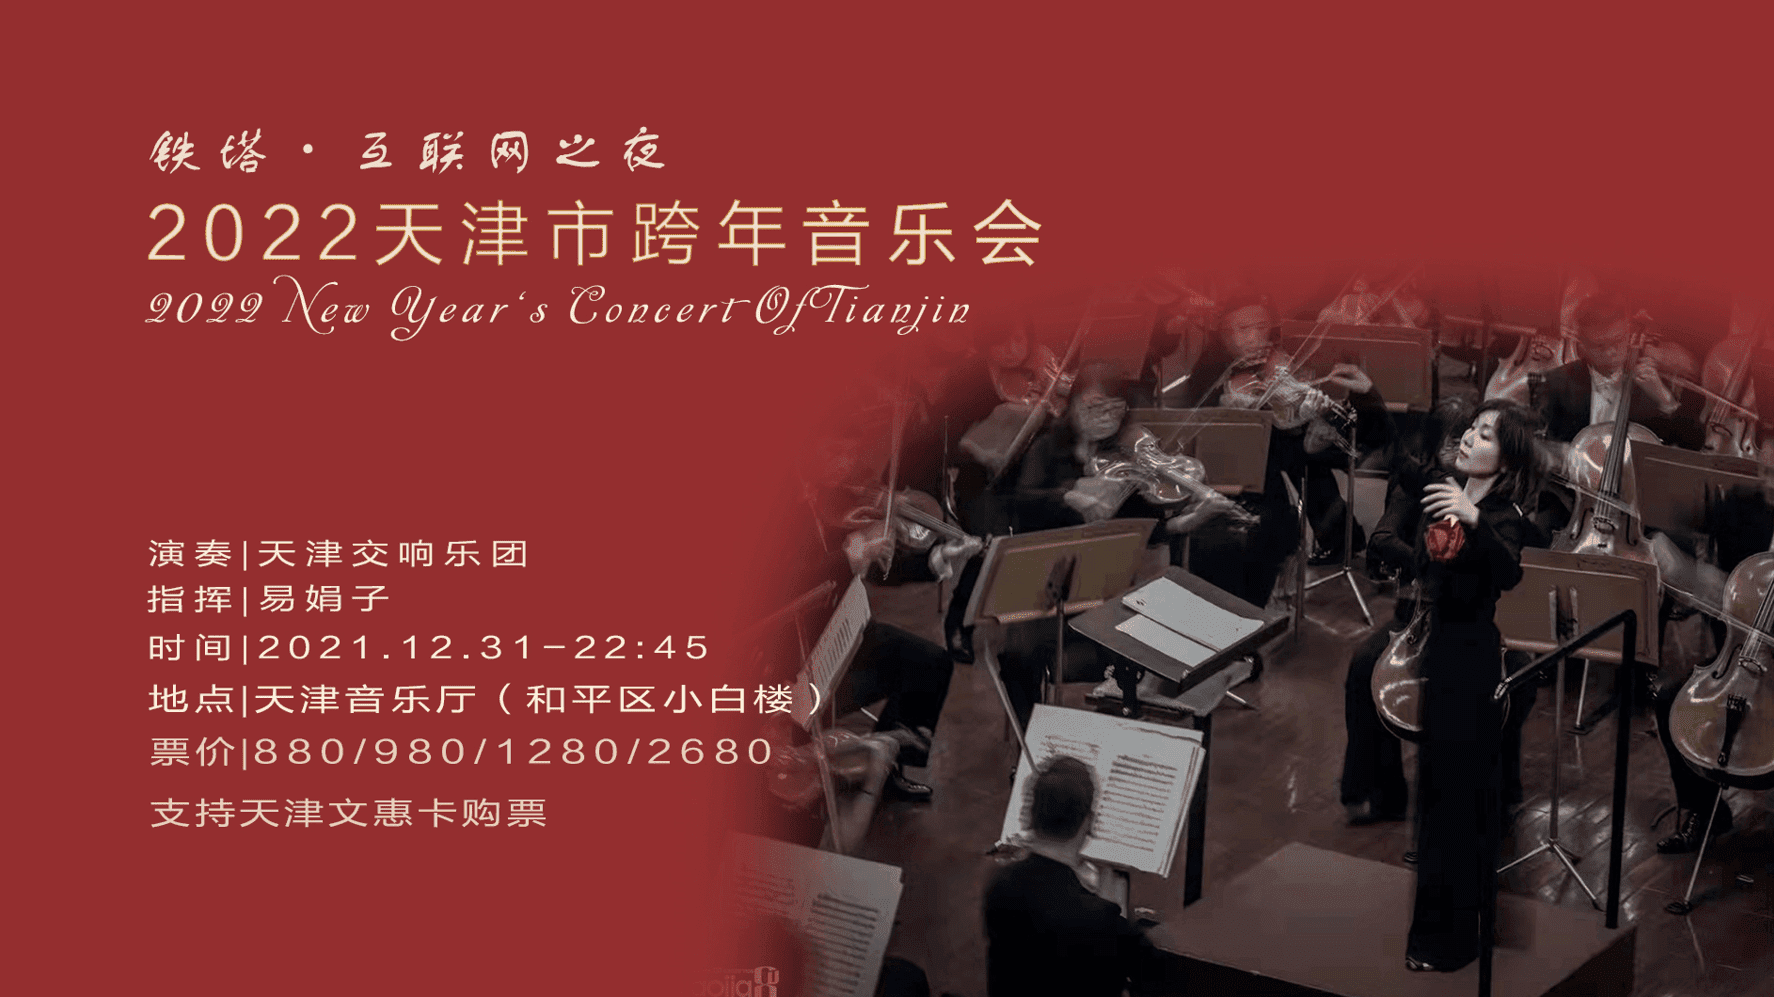 “铁塔·互联网之夜”2022天津市跨年音乐会与您一起城市乐享